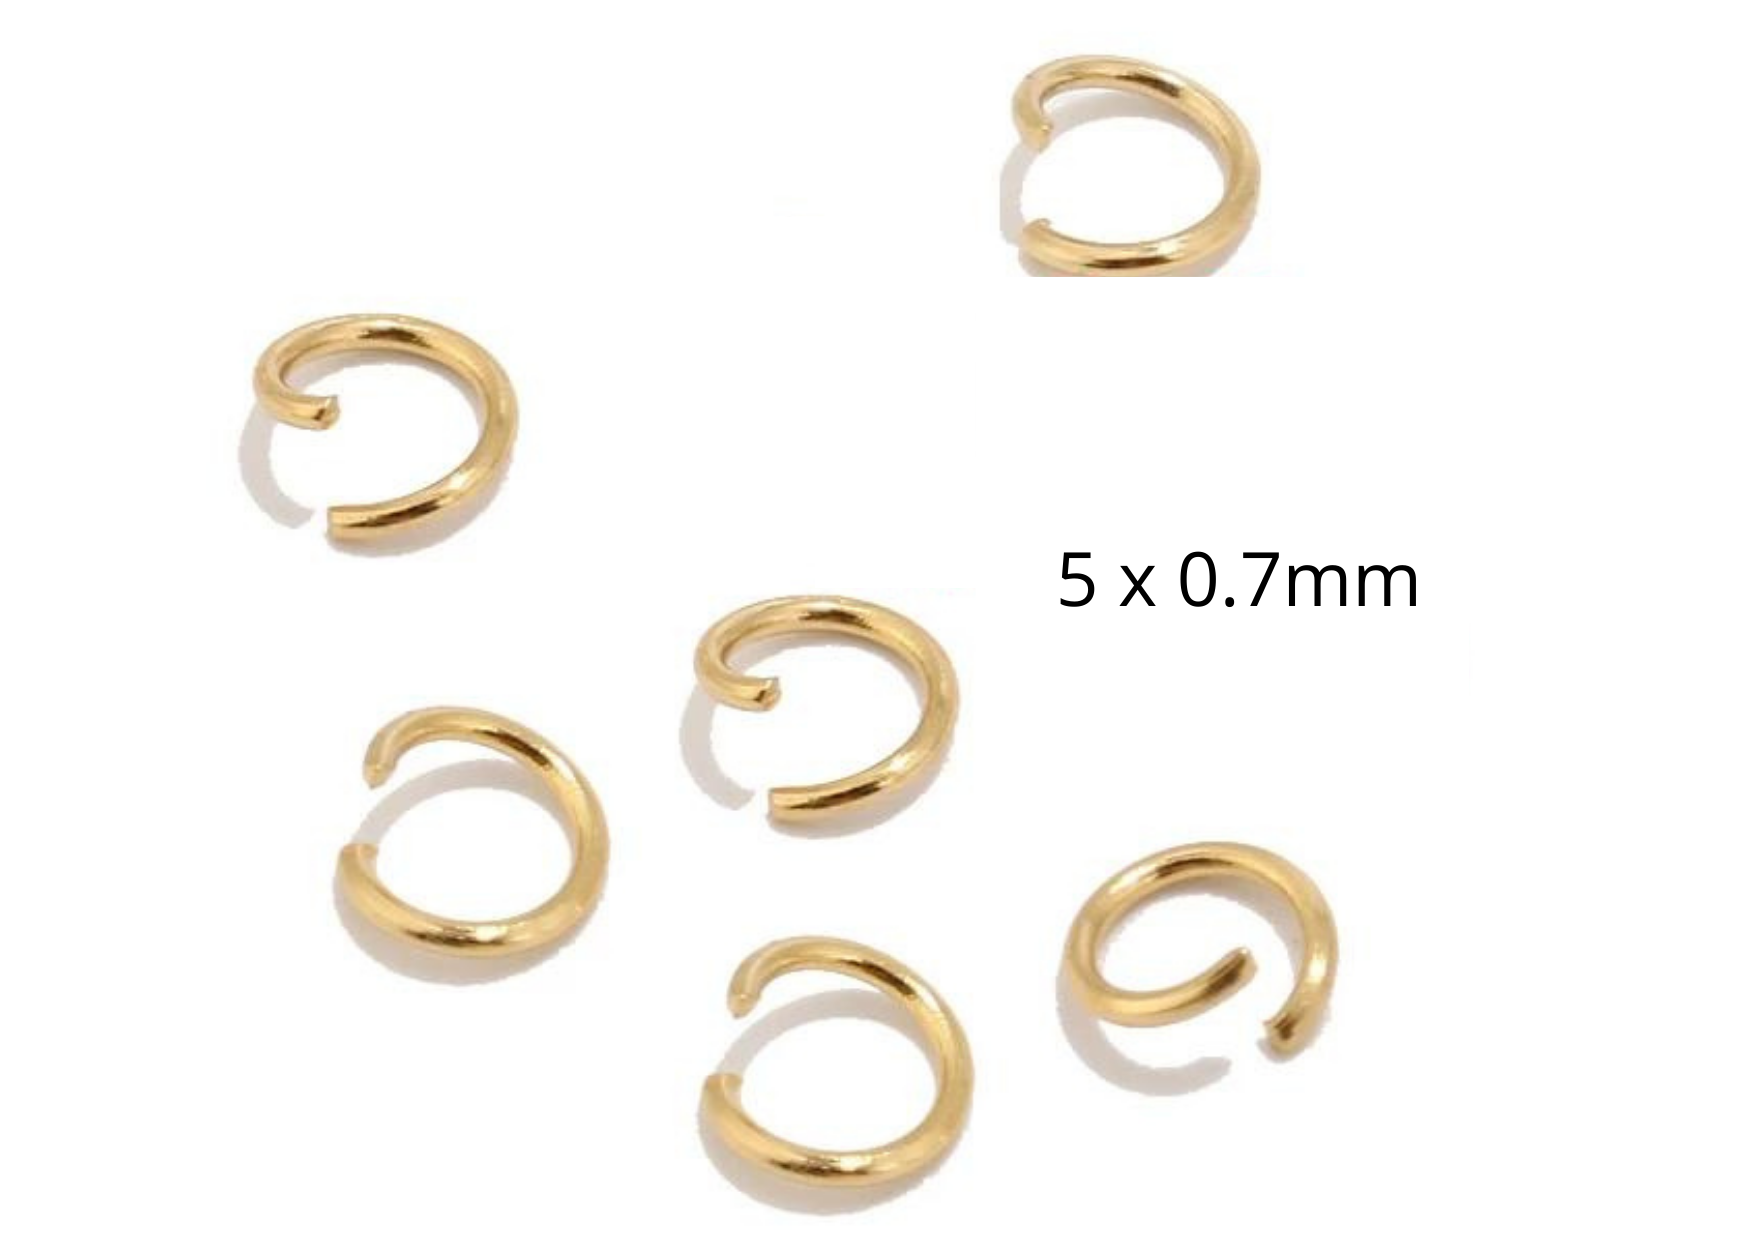 RVS Ringetjes 5mm 25 stuks goud kleur